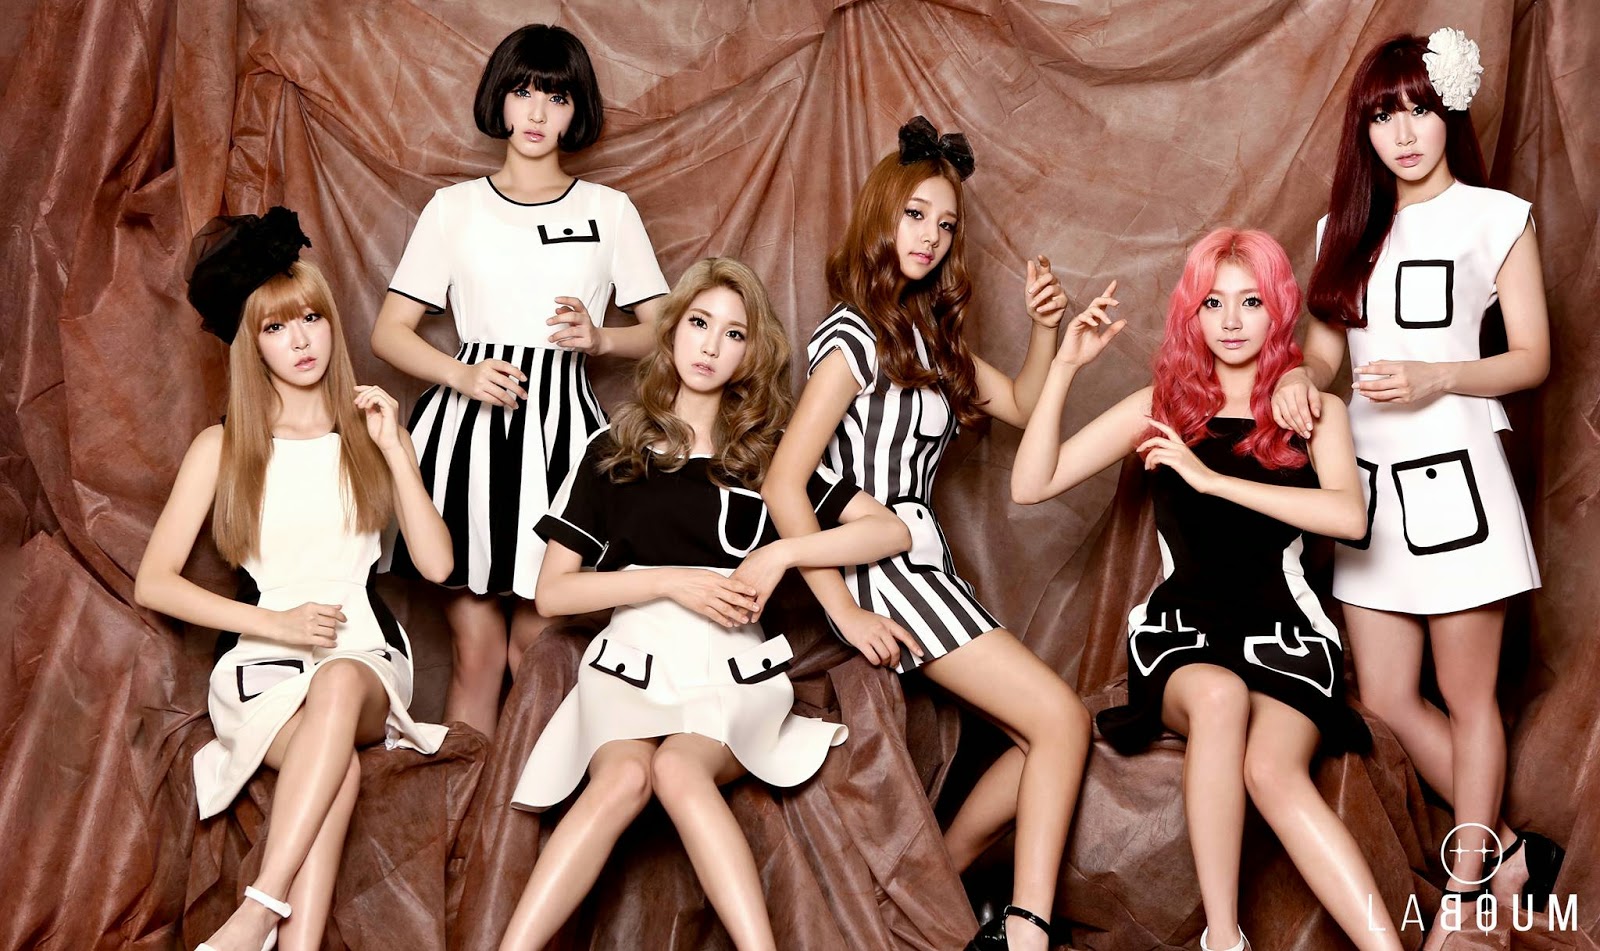 8 K-pop групп, которые дебютировали 5 лет назад